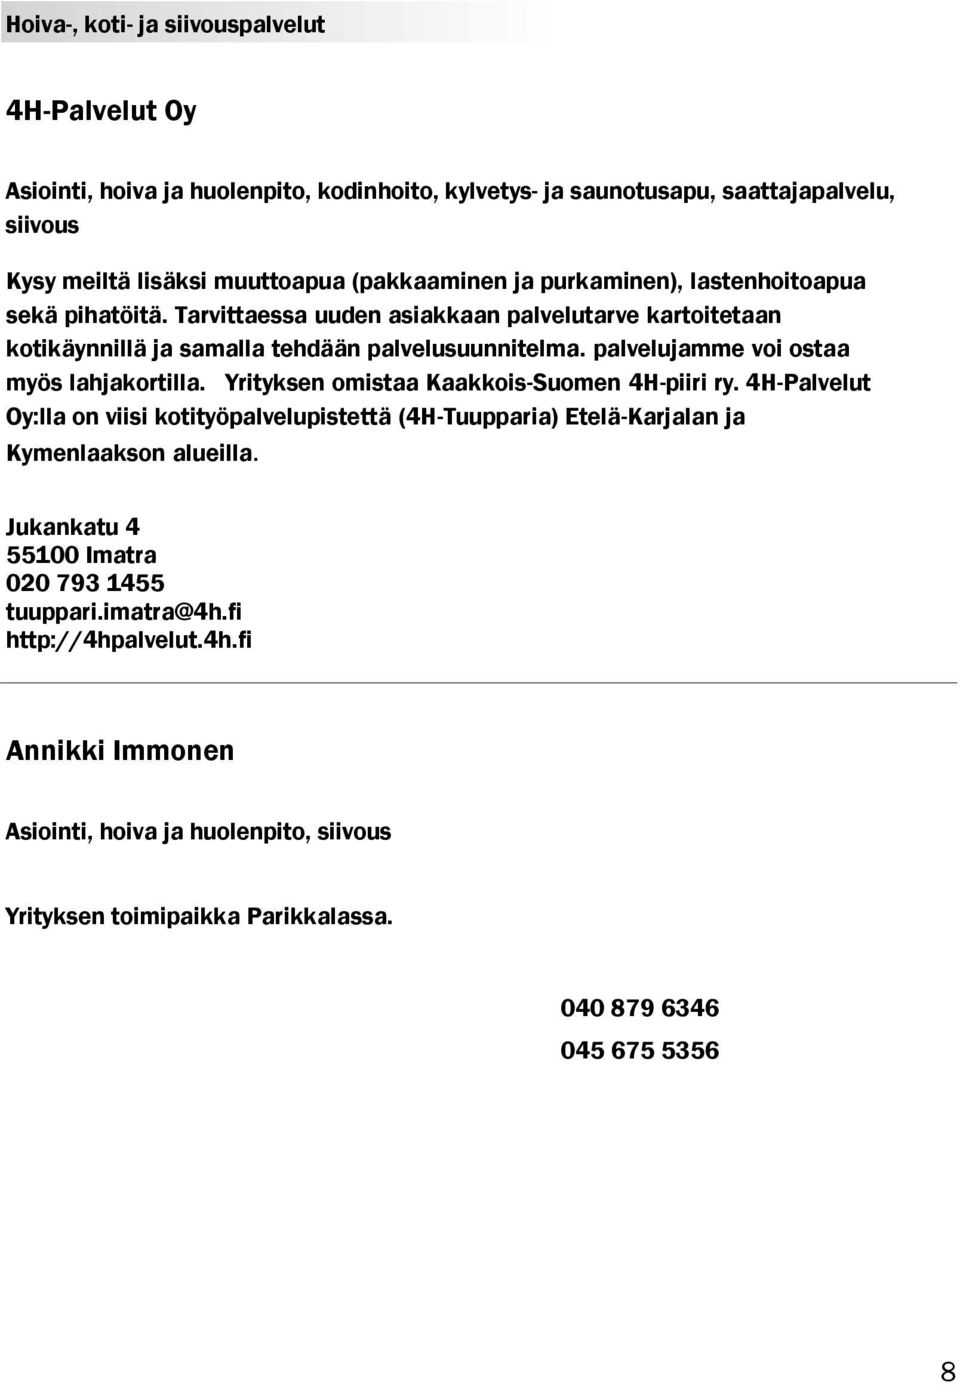 palvelujamme voi ostaa myös lahjakortilla. Yrityksen omistaa Kaakkois-Suomen 4H-piiri ry.